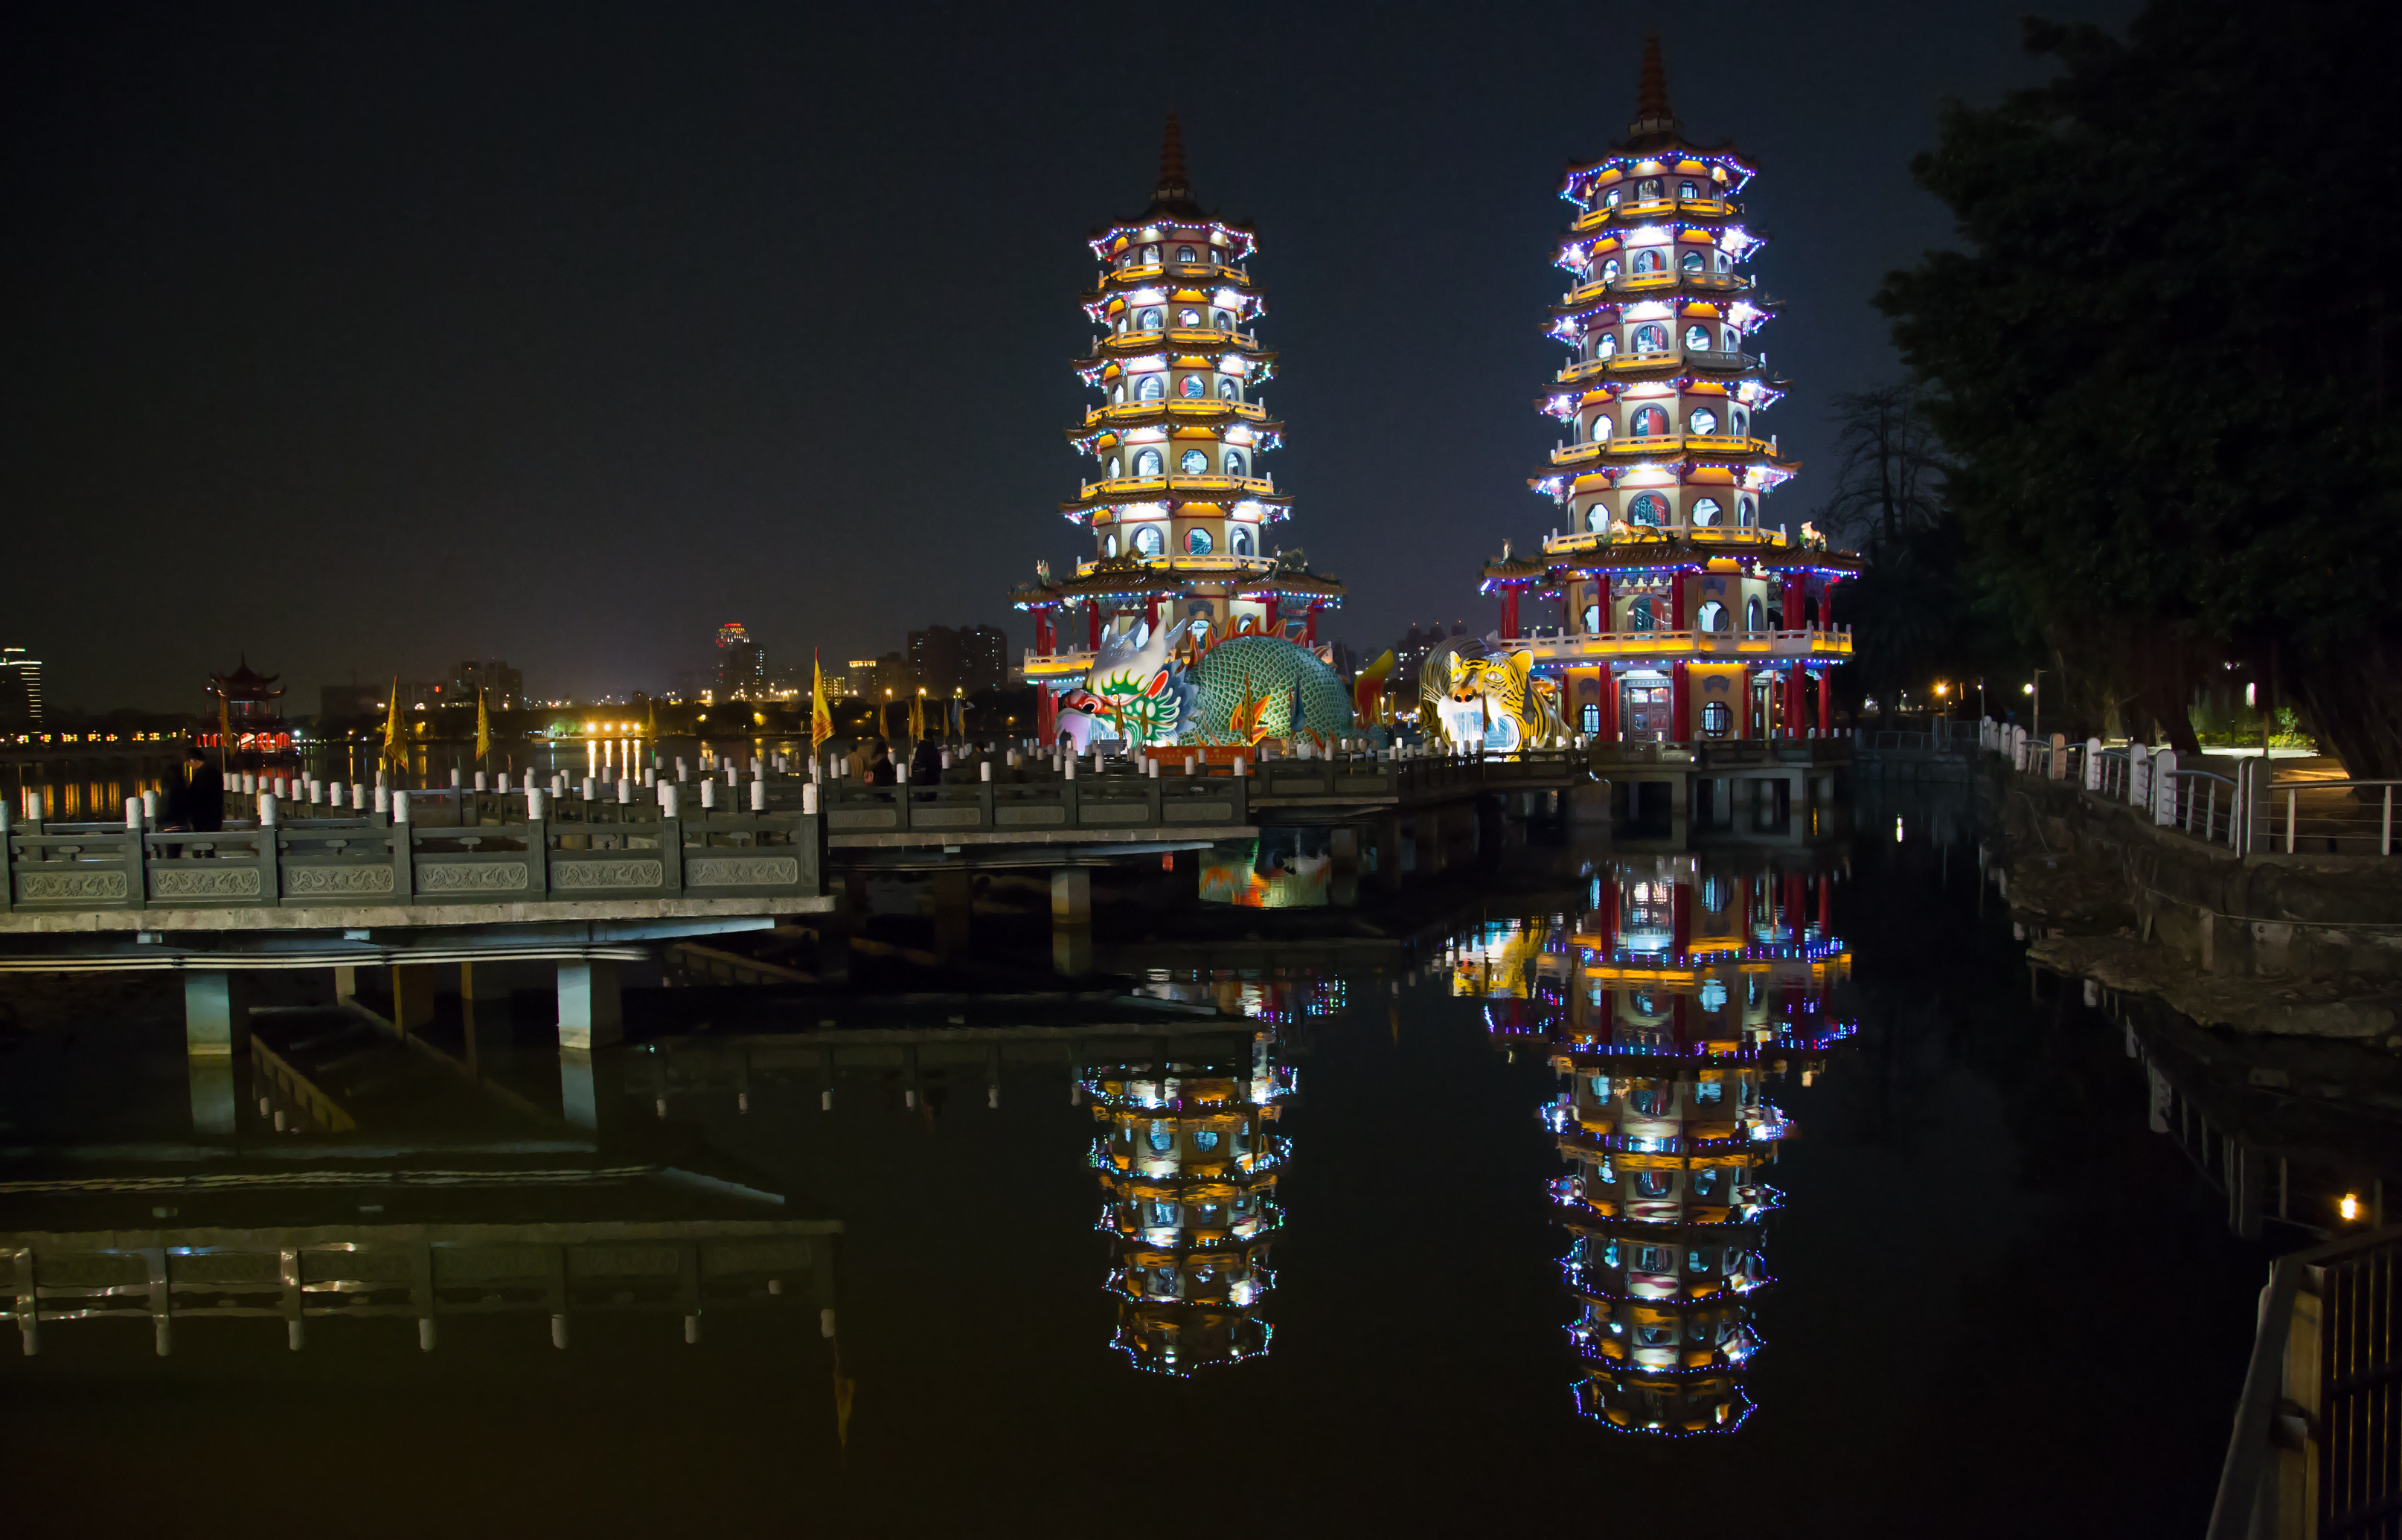 Taiwan - Kaohsiung - Zuoying - Lotus Pond - The Dragon and Tiger Pagodas